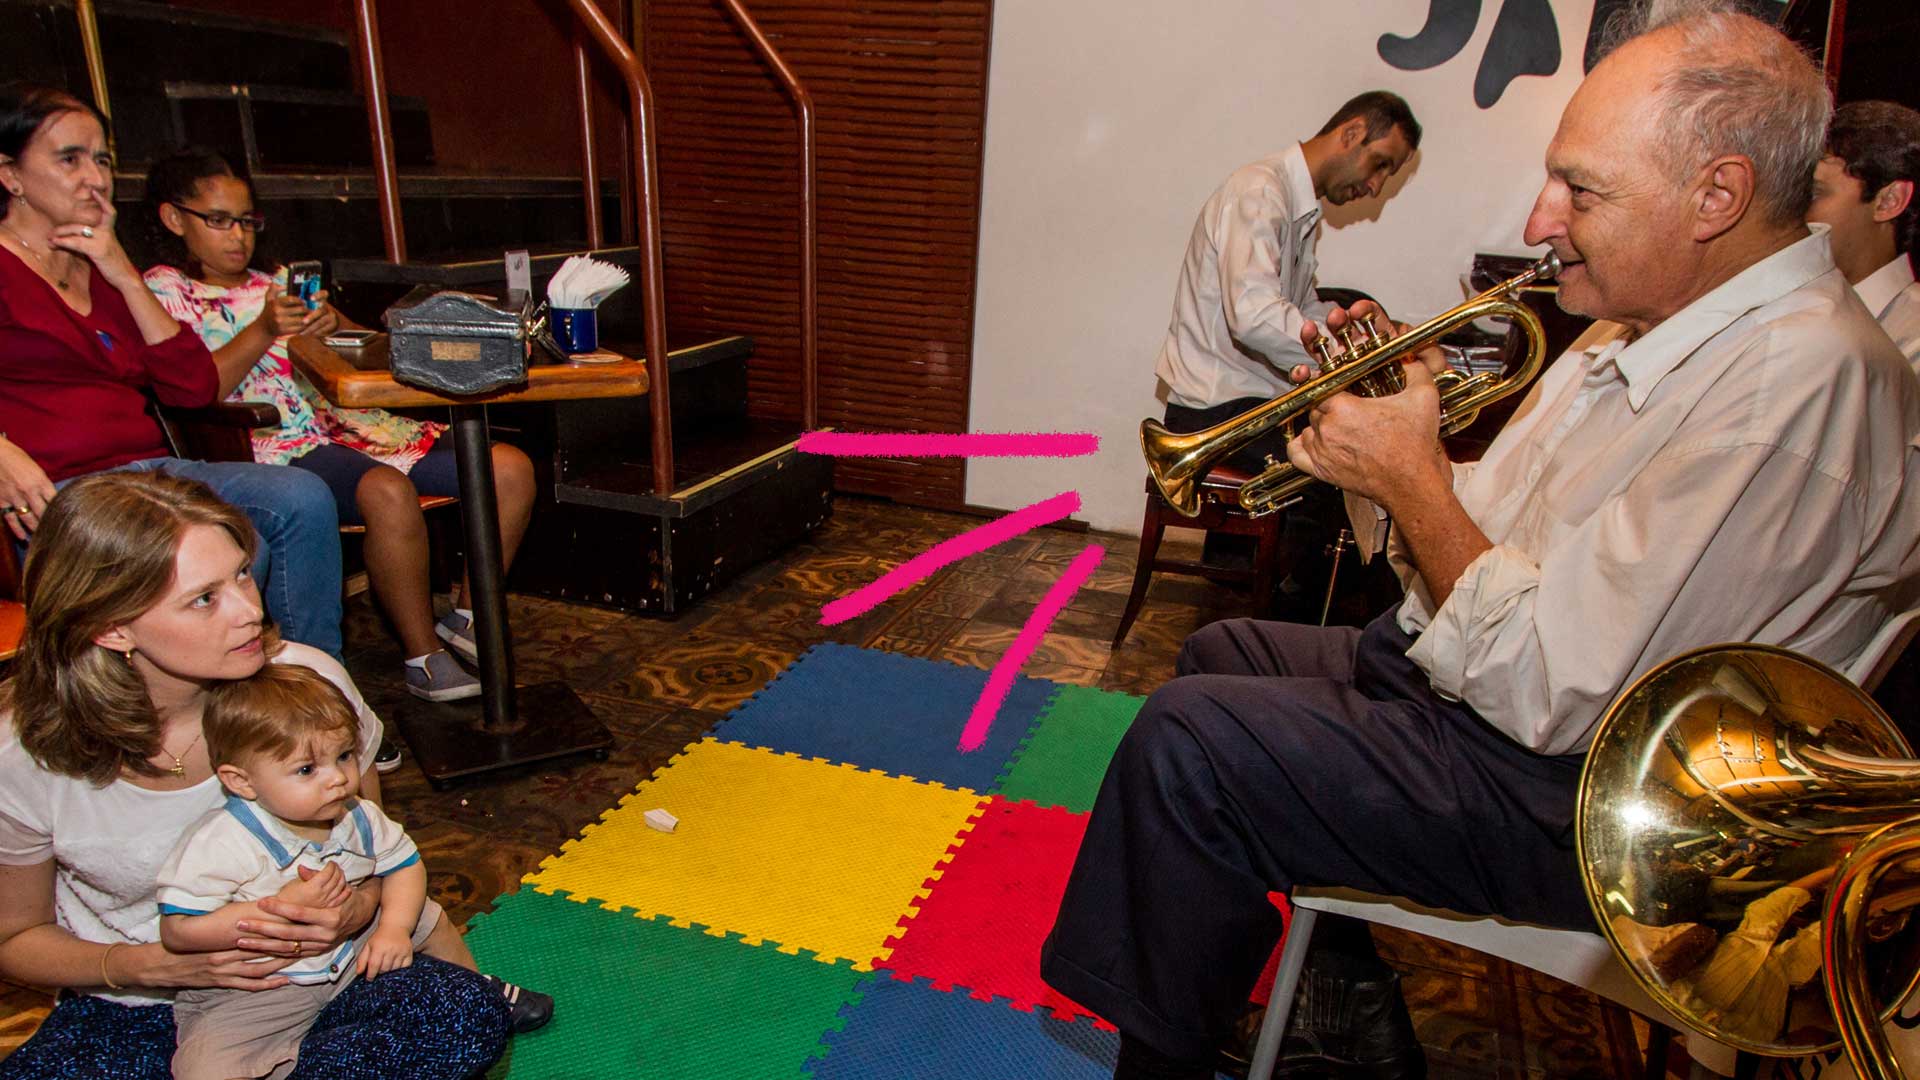 Sair com crianças></noscript> foto de um lugar em que um homem toca um instrumento musical e, no chão, há um piso colorido.